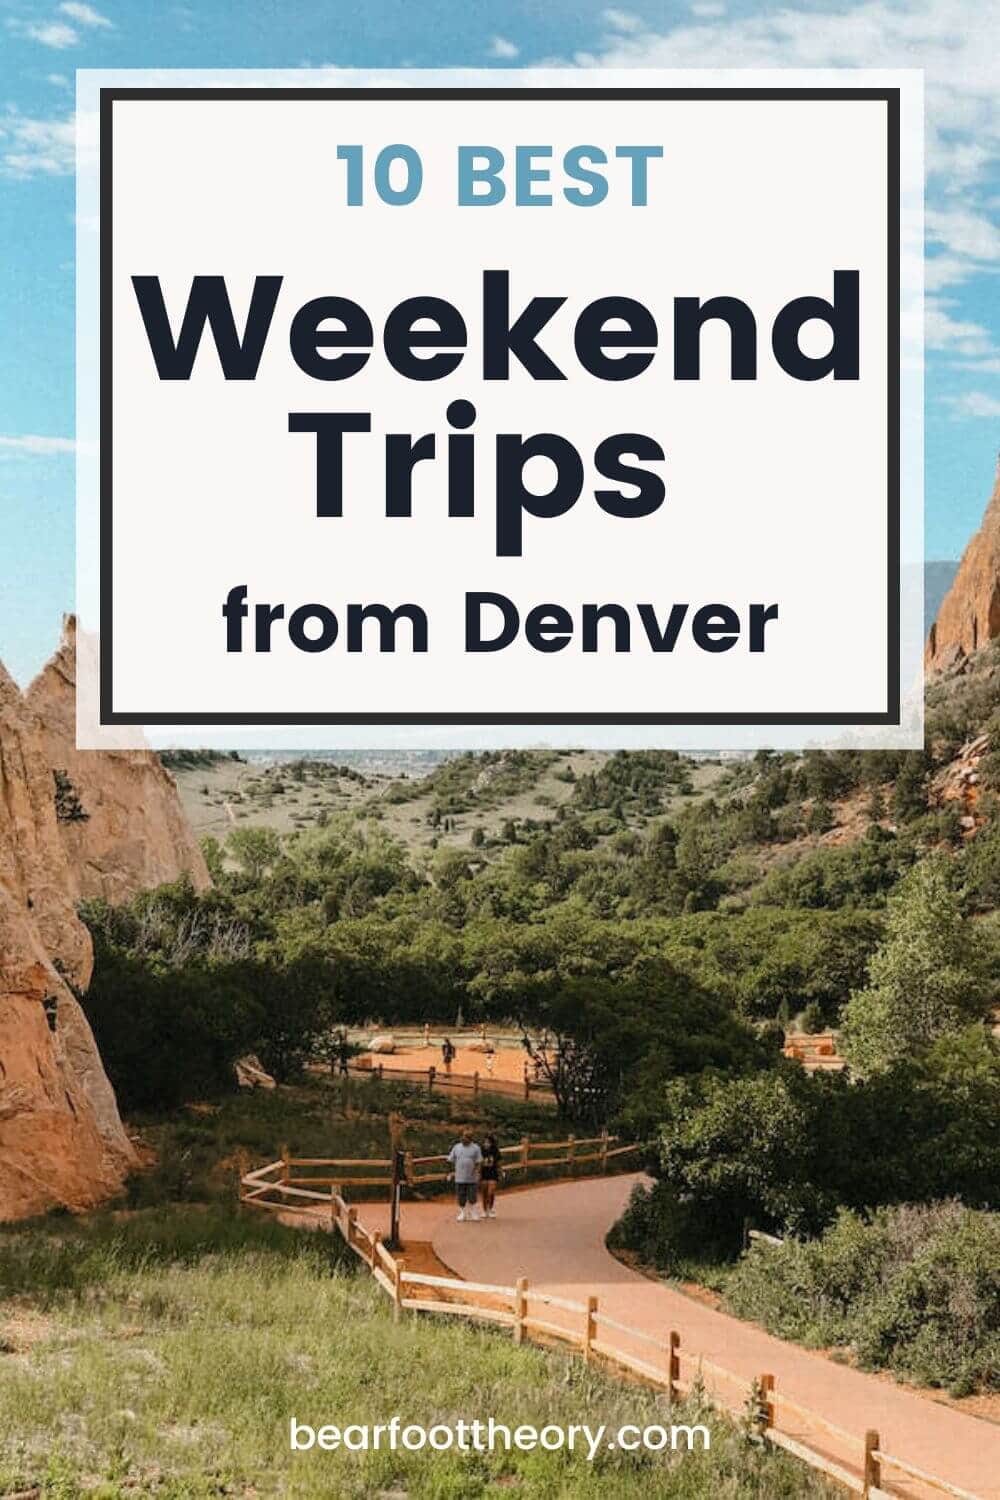 关于从丹佛出发的10个最佳周末旅行的博客帖子，以众神花园的照片为背景